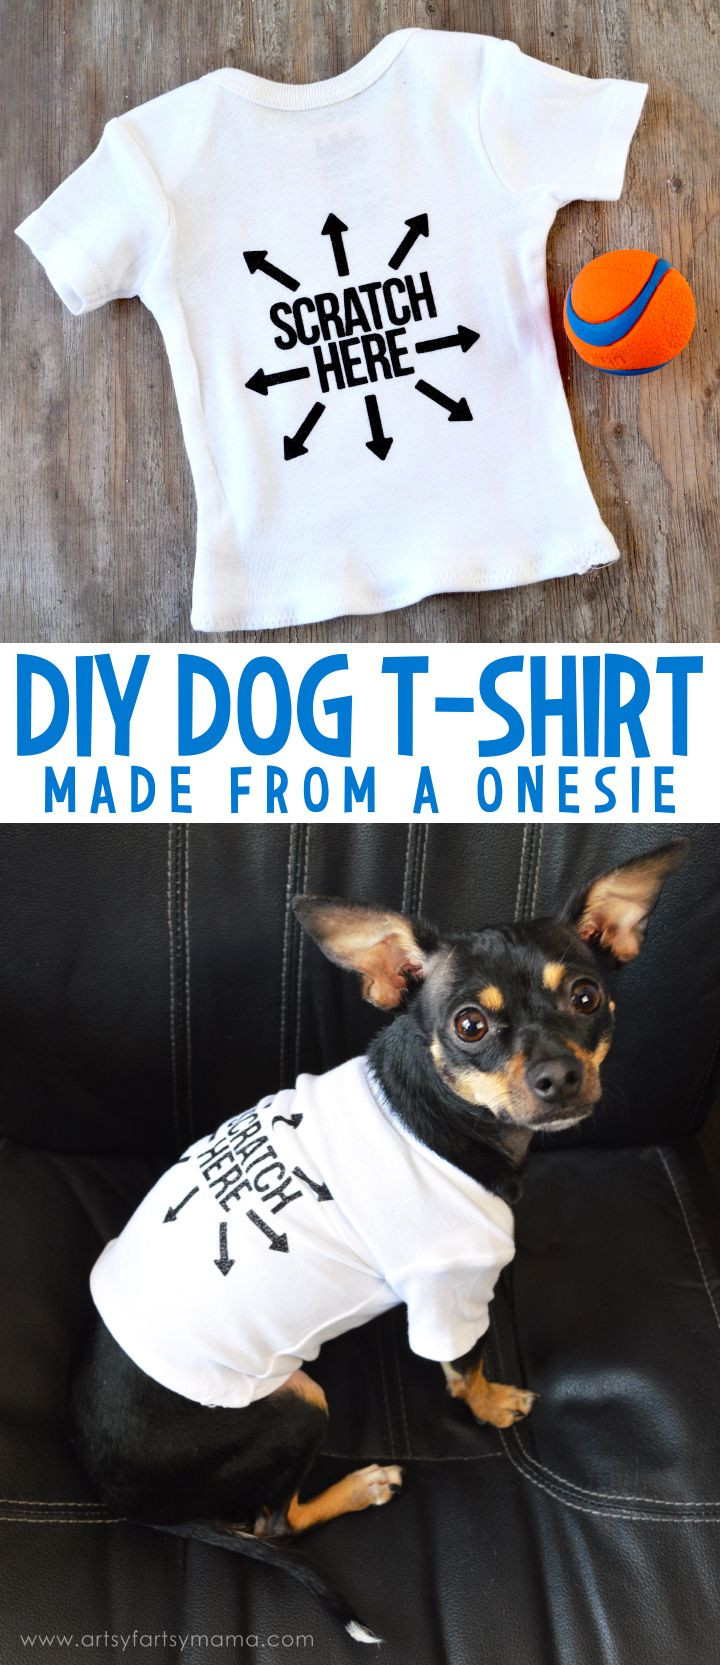 DIY Dog Shirts
 DIY Dog T Shirt